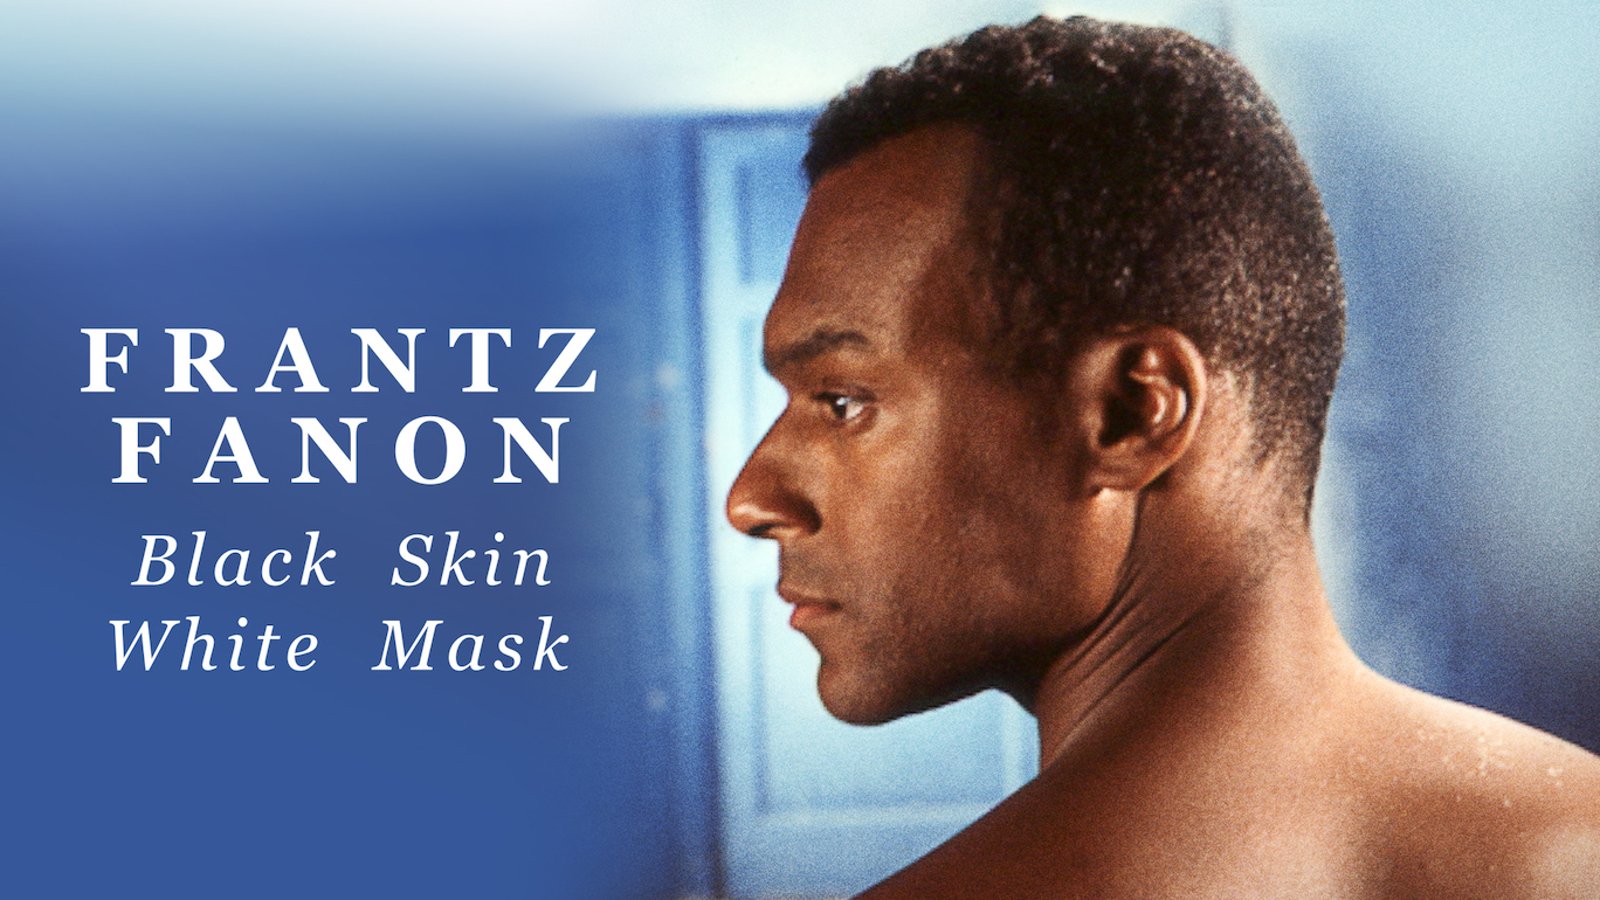 Frantz Fanon: Black Skin, White Mask - The Life and Work of Philosopher Frantz Fanon